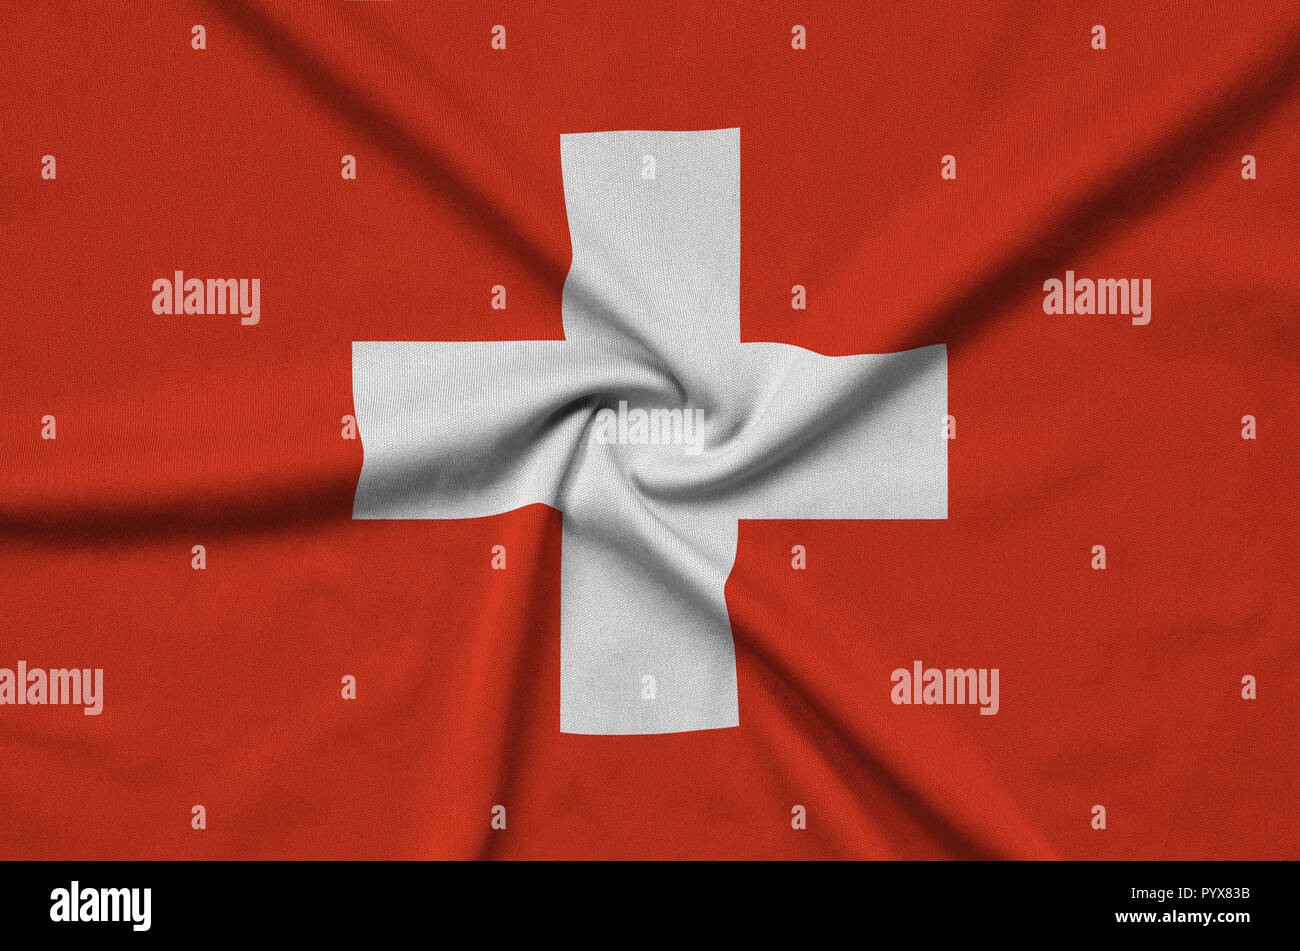 Switzerland National Soccer Team Stockfotos und -bilder Kaufen - Alamy